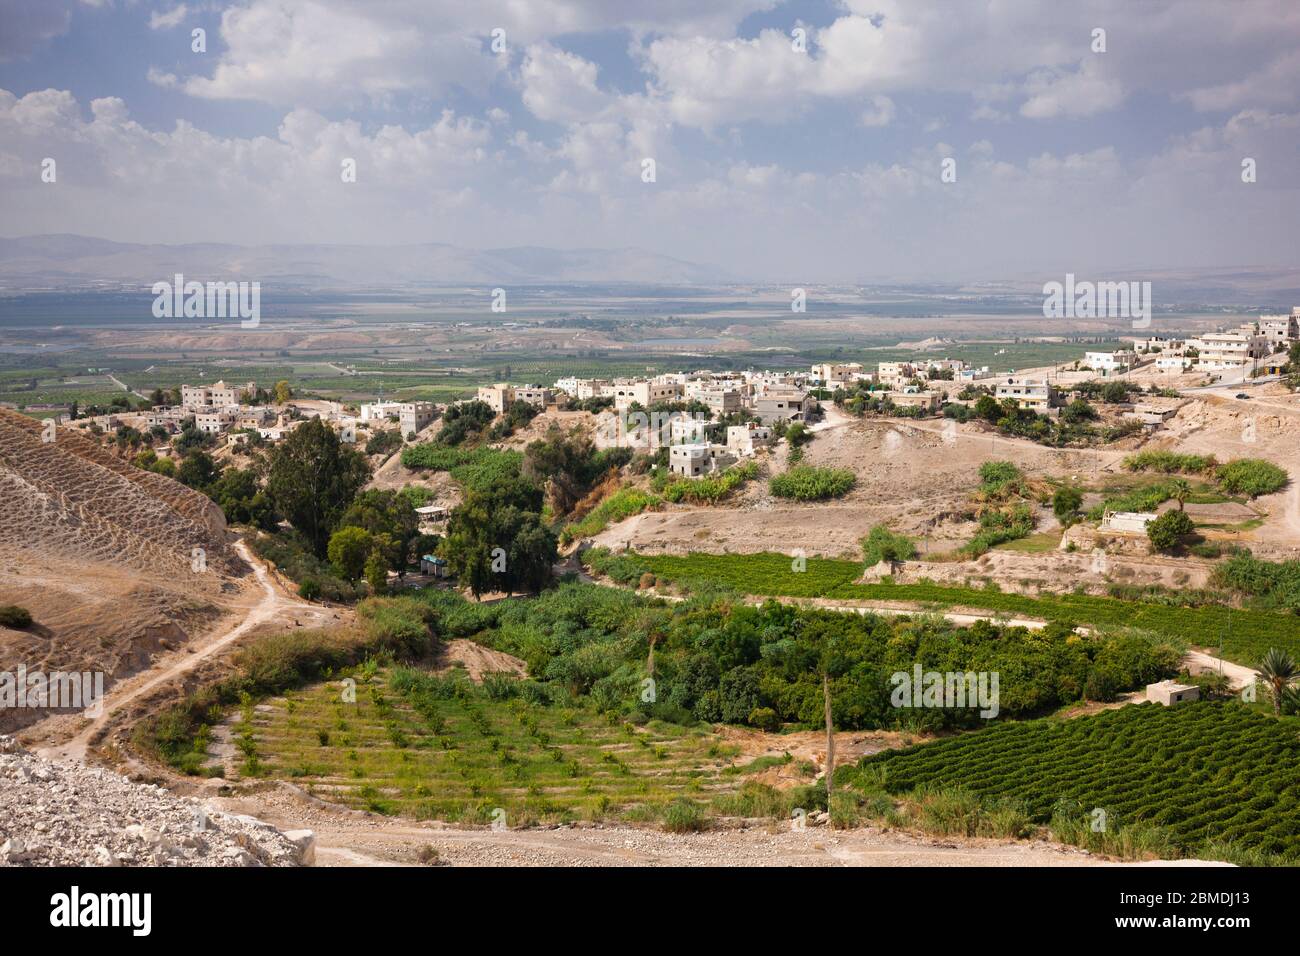 Granja agrícola cerca de las ruinas de Pella, valle de Jordania, Tabqet Fahel, Tabaqat Fahl, Irbit, Gobernación de Irbid, Jordania, Oriente Medio, Asia Foto de stock